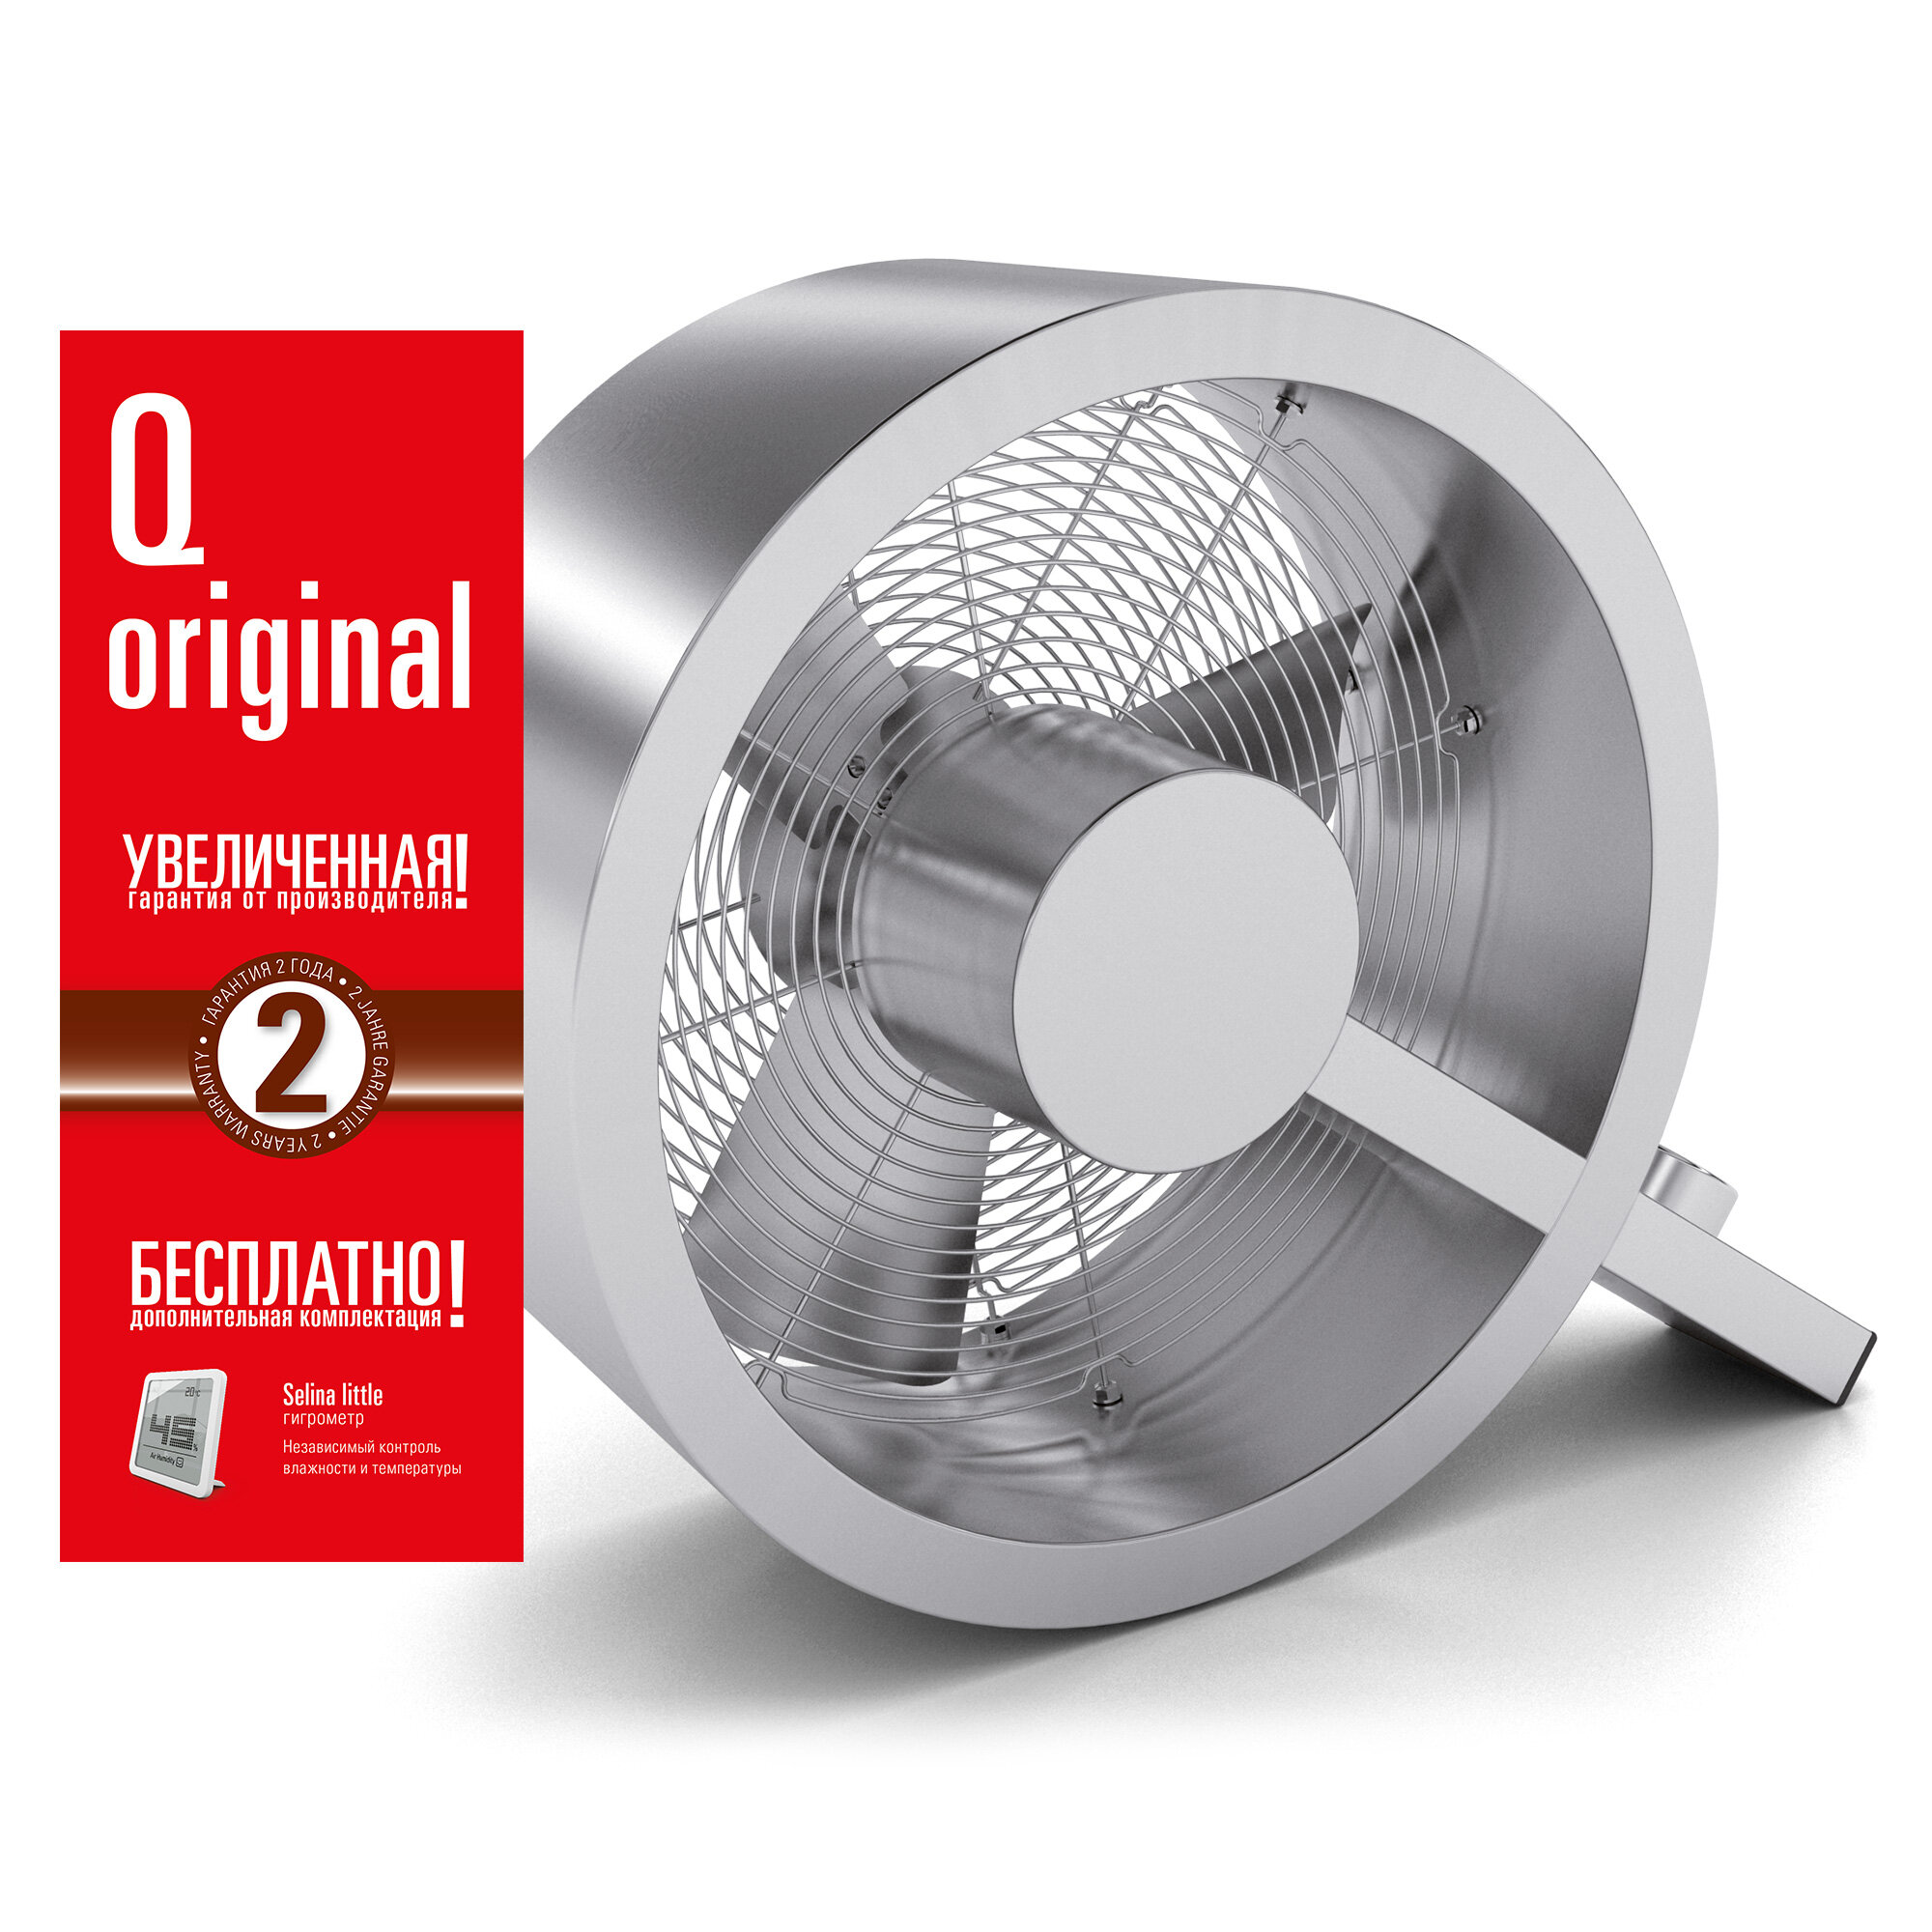 Вентилятор универсальный Stadler Form Q fan Original, Q-002OR; нержавеющая сталь, серебристый - фотография № 1